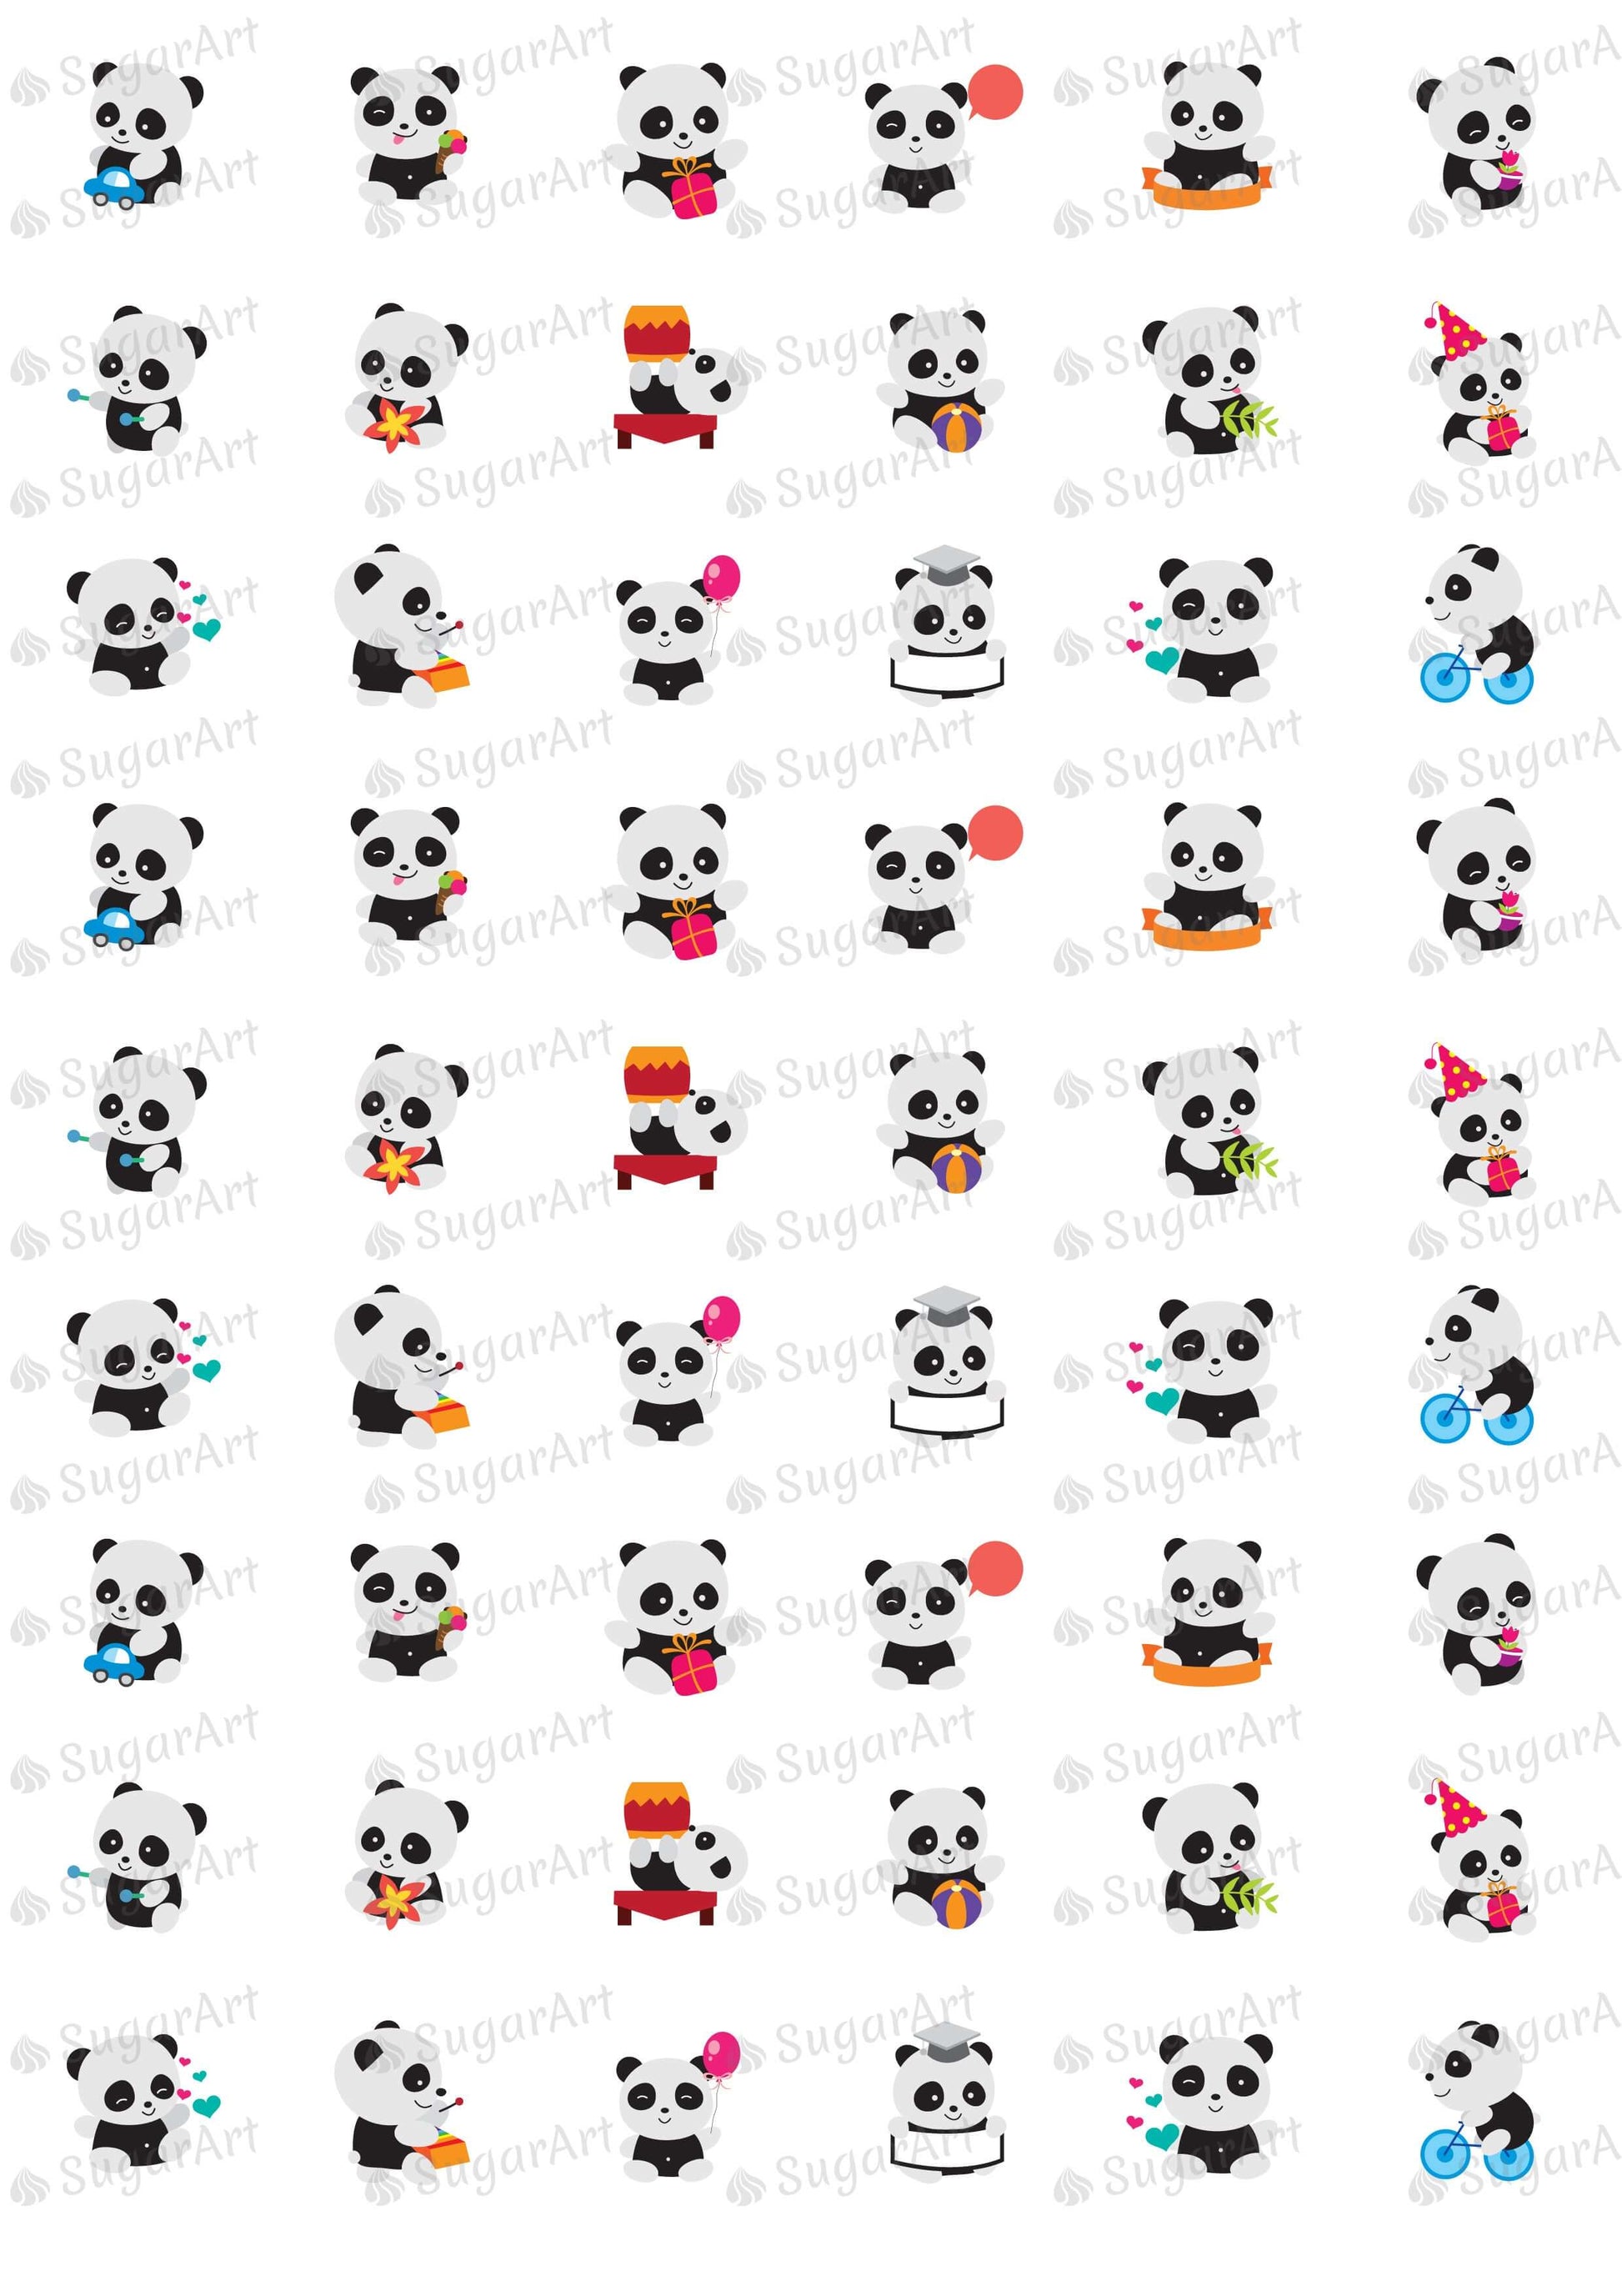 Playing Pandas - ESA054.